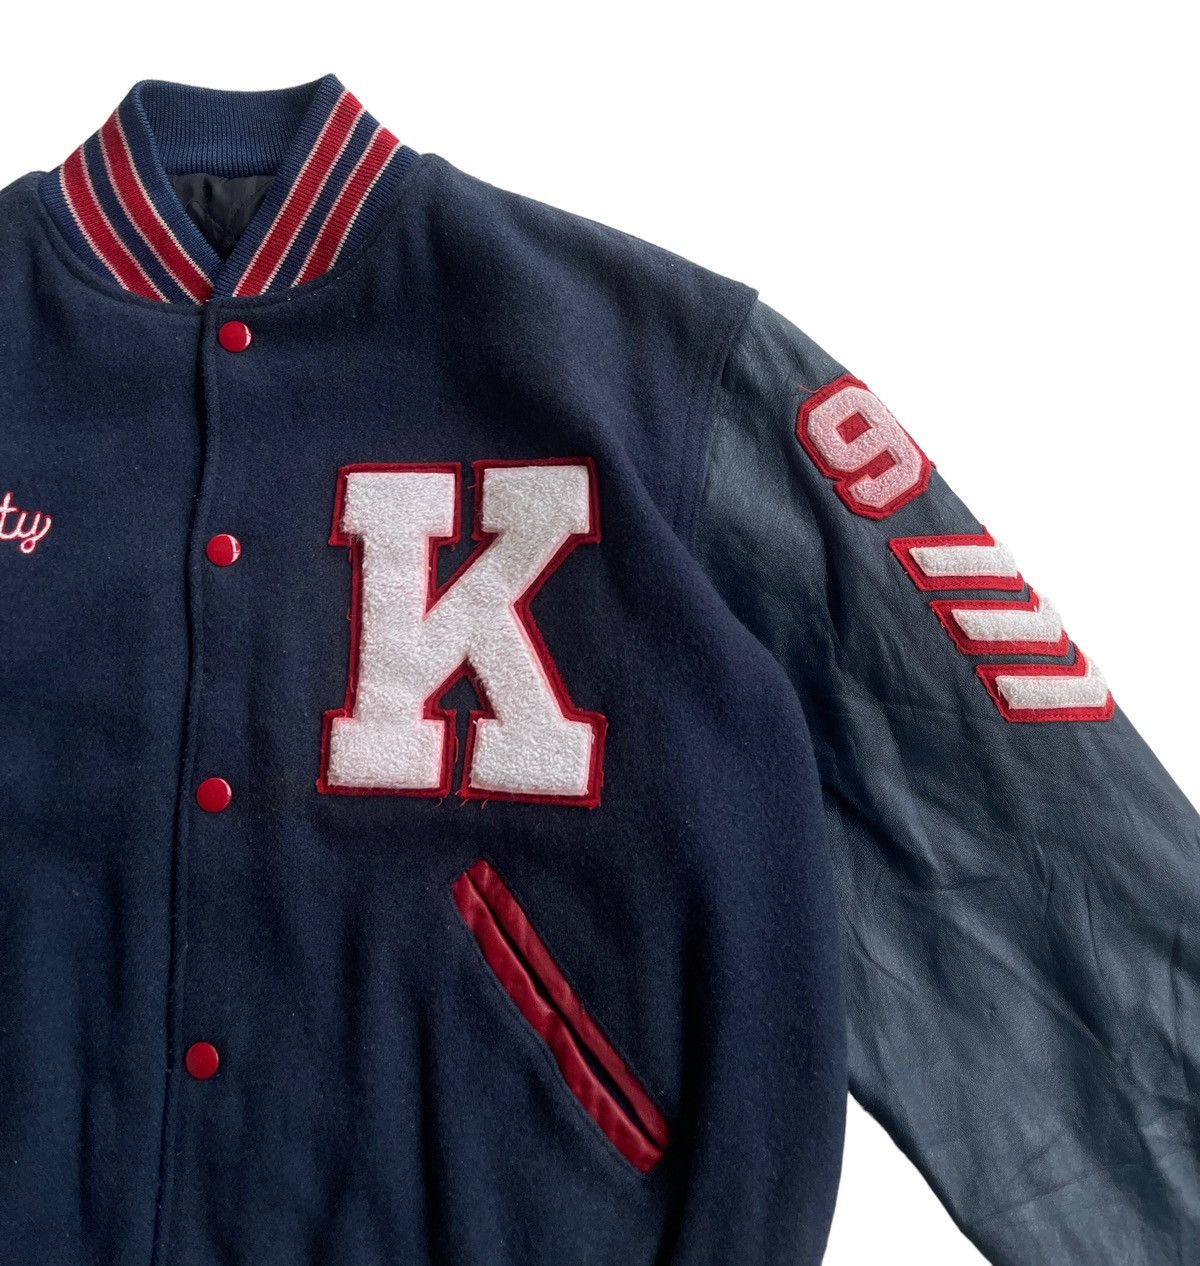 Vintage Vintage 70s Delong Kennedy Varsity Jacket Size US M / EU 48-50 / 2 - 9 Thumbnail